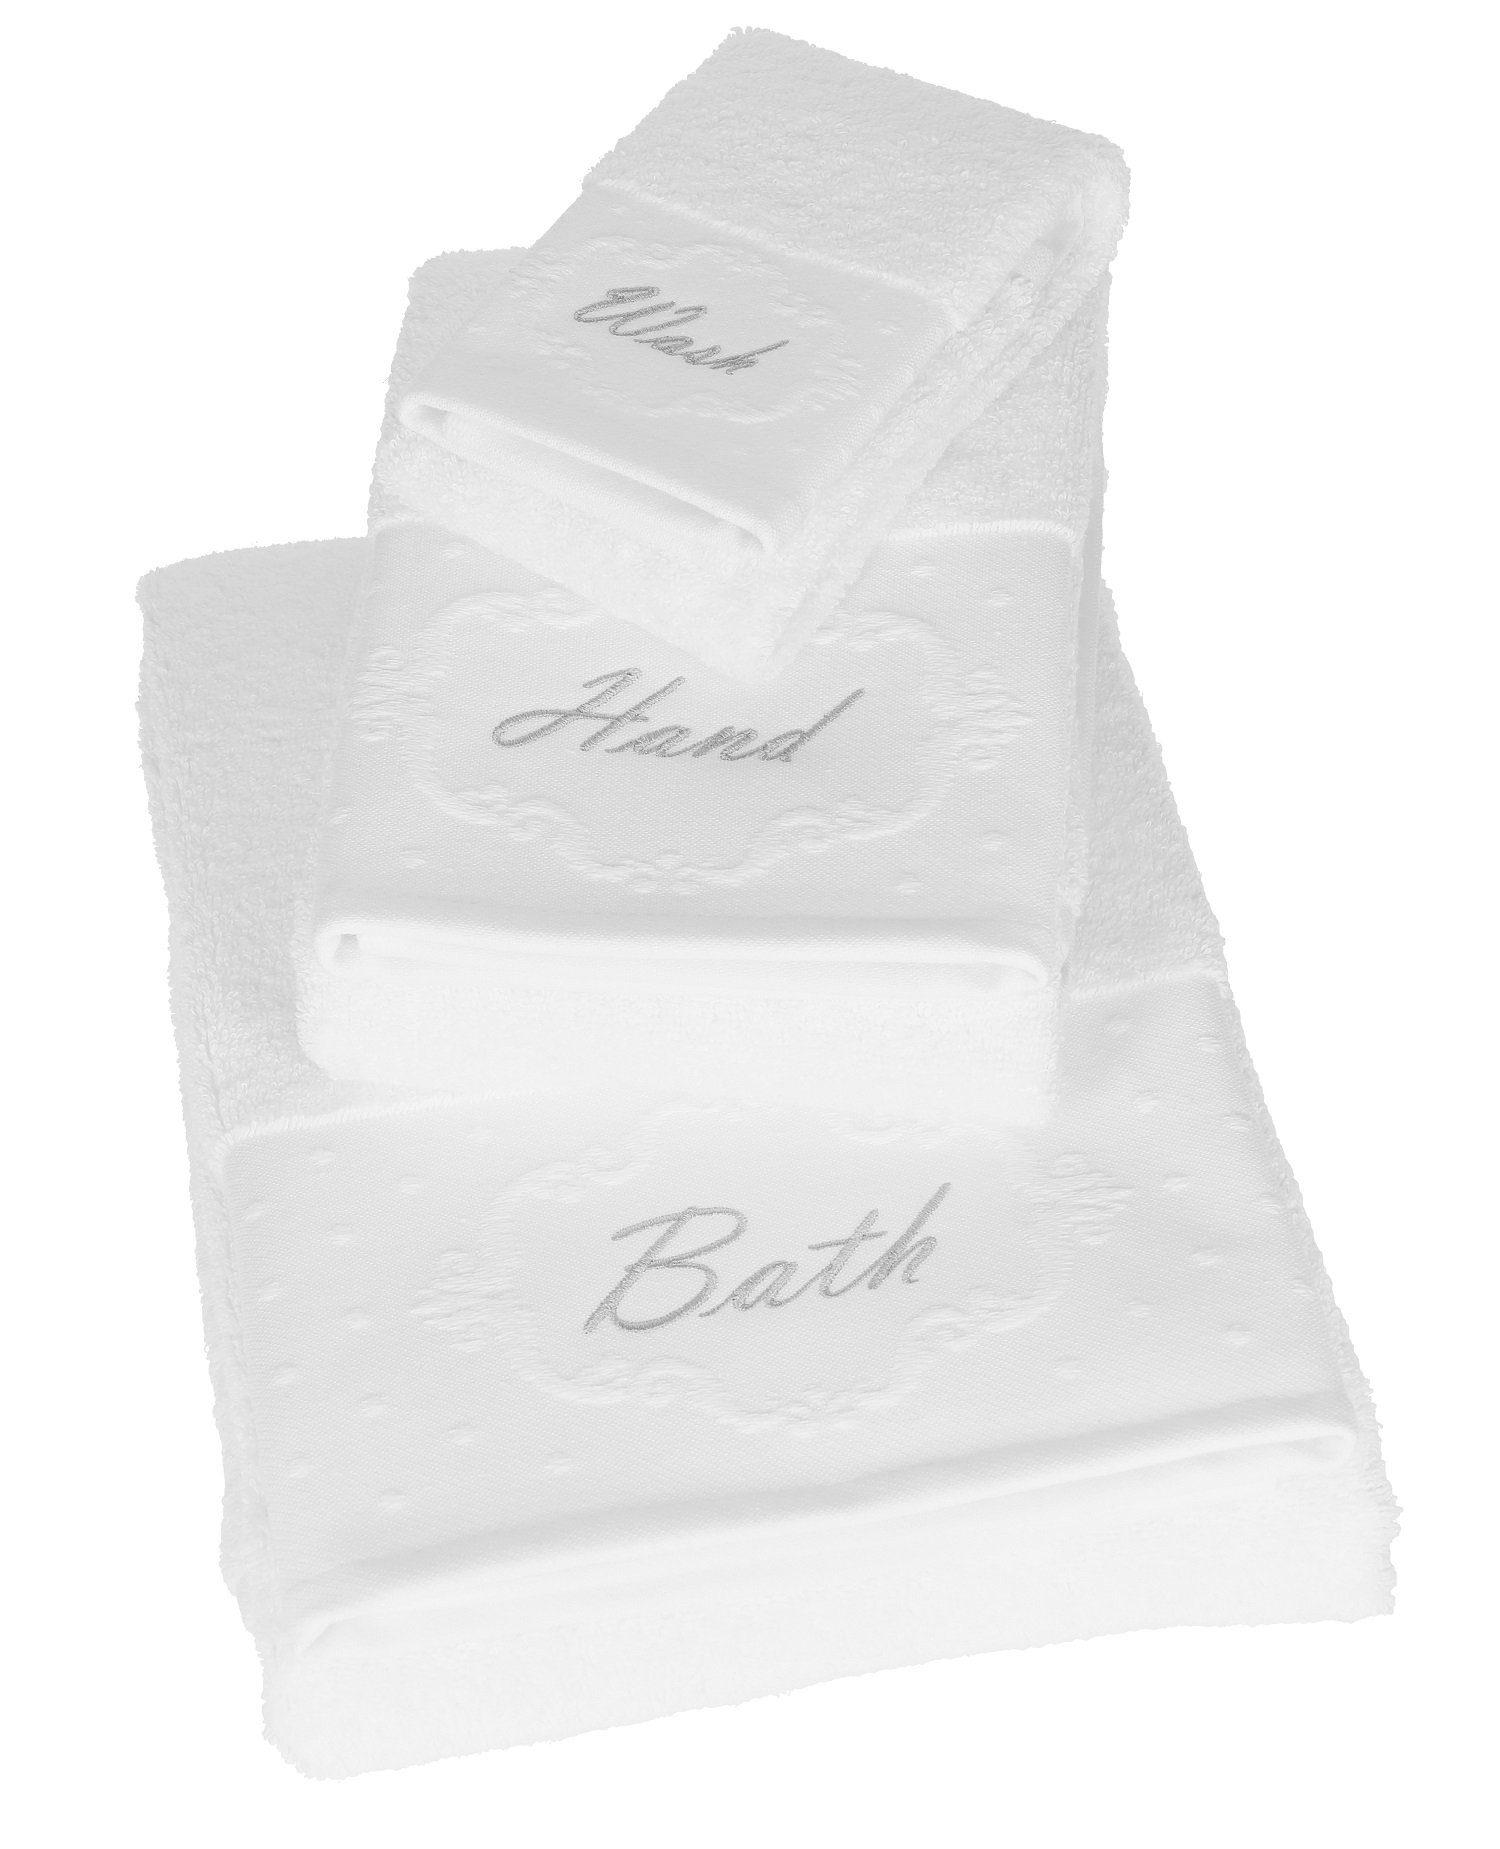 Betz 100% Handtuch Handtücher 100% 1 BATH 1 Handtuch Set 1 Liegetuch Baumwolle, Baumwolle Gästetuch weiß 3 TLG. Set